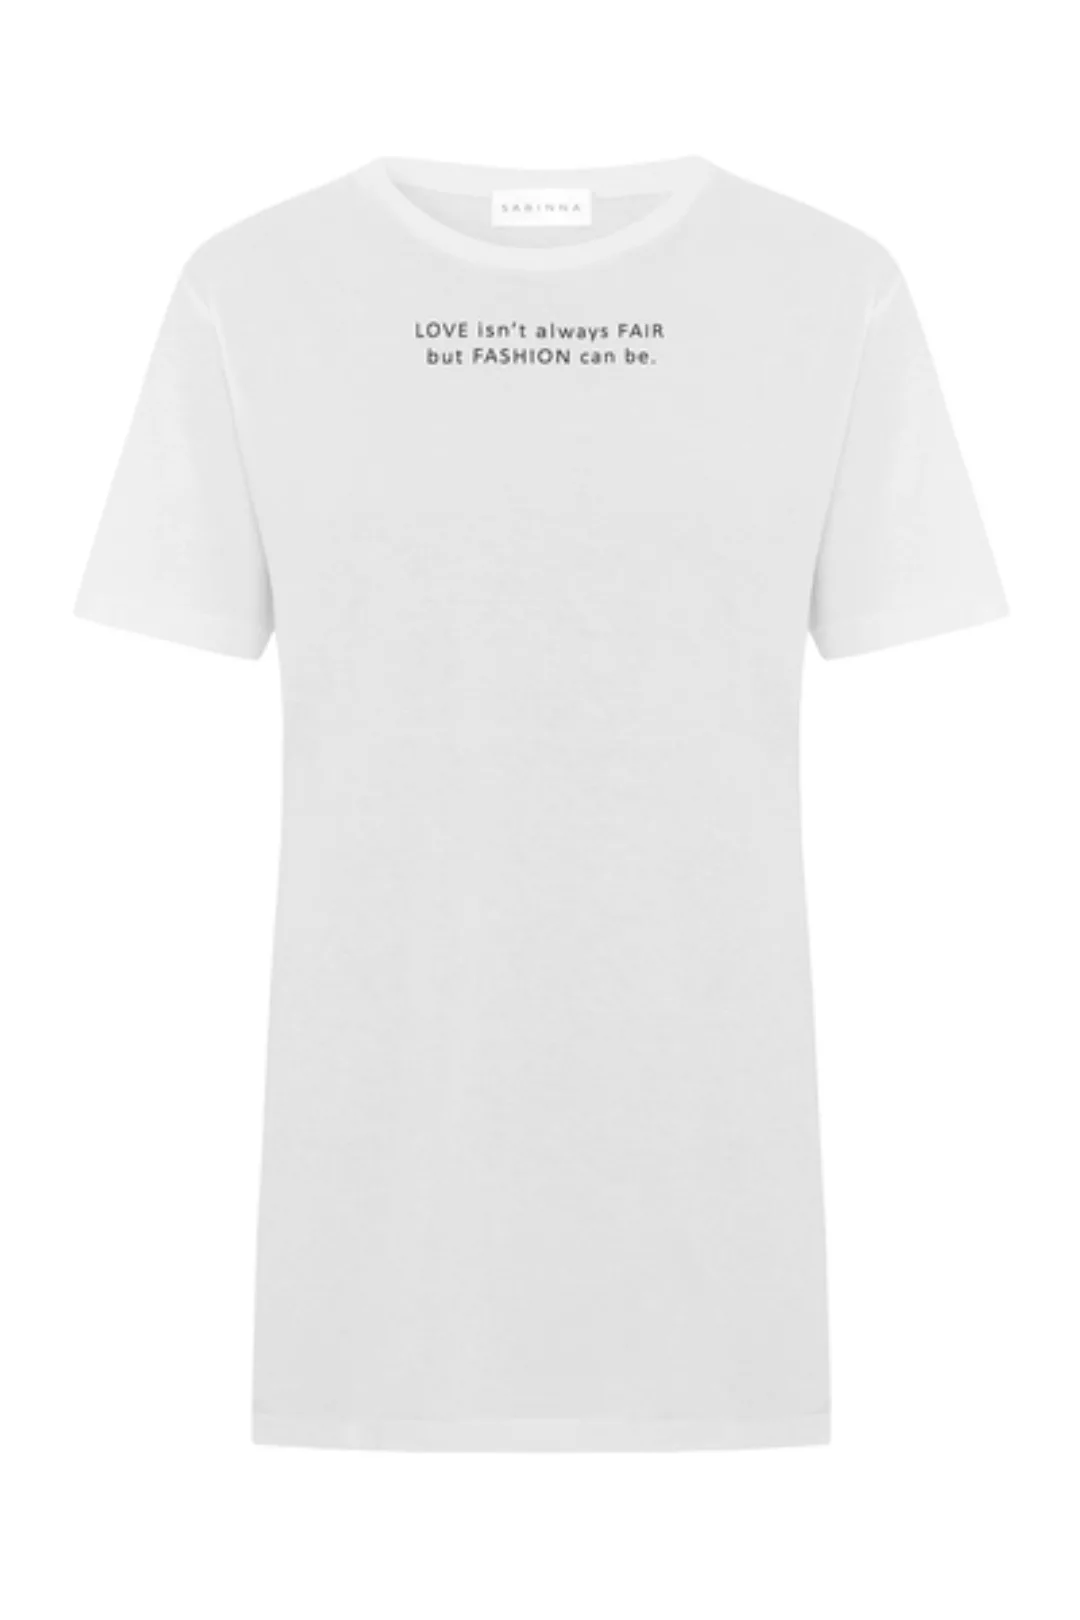 Bio-baumwolle T-shirt: Love Fair Fashion günstig online kaufen